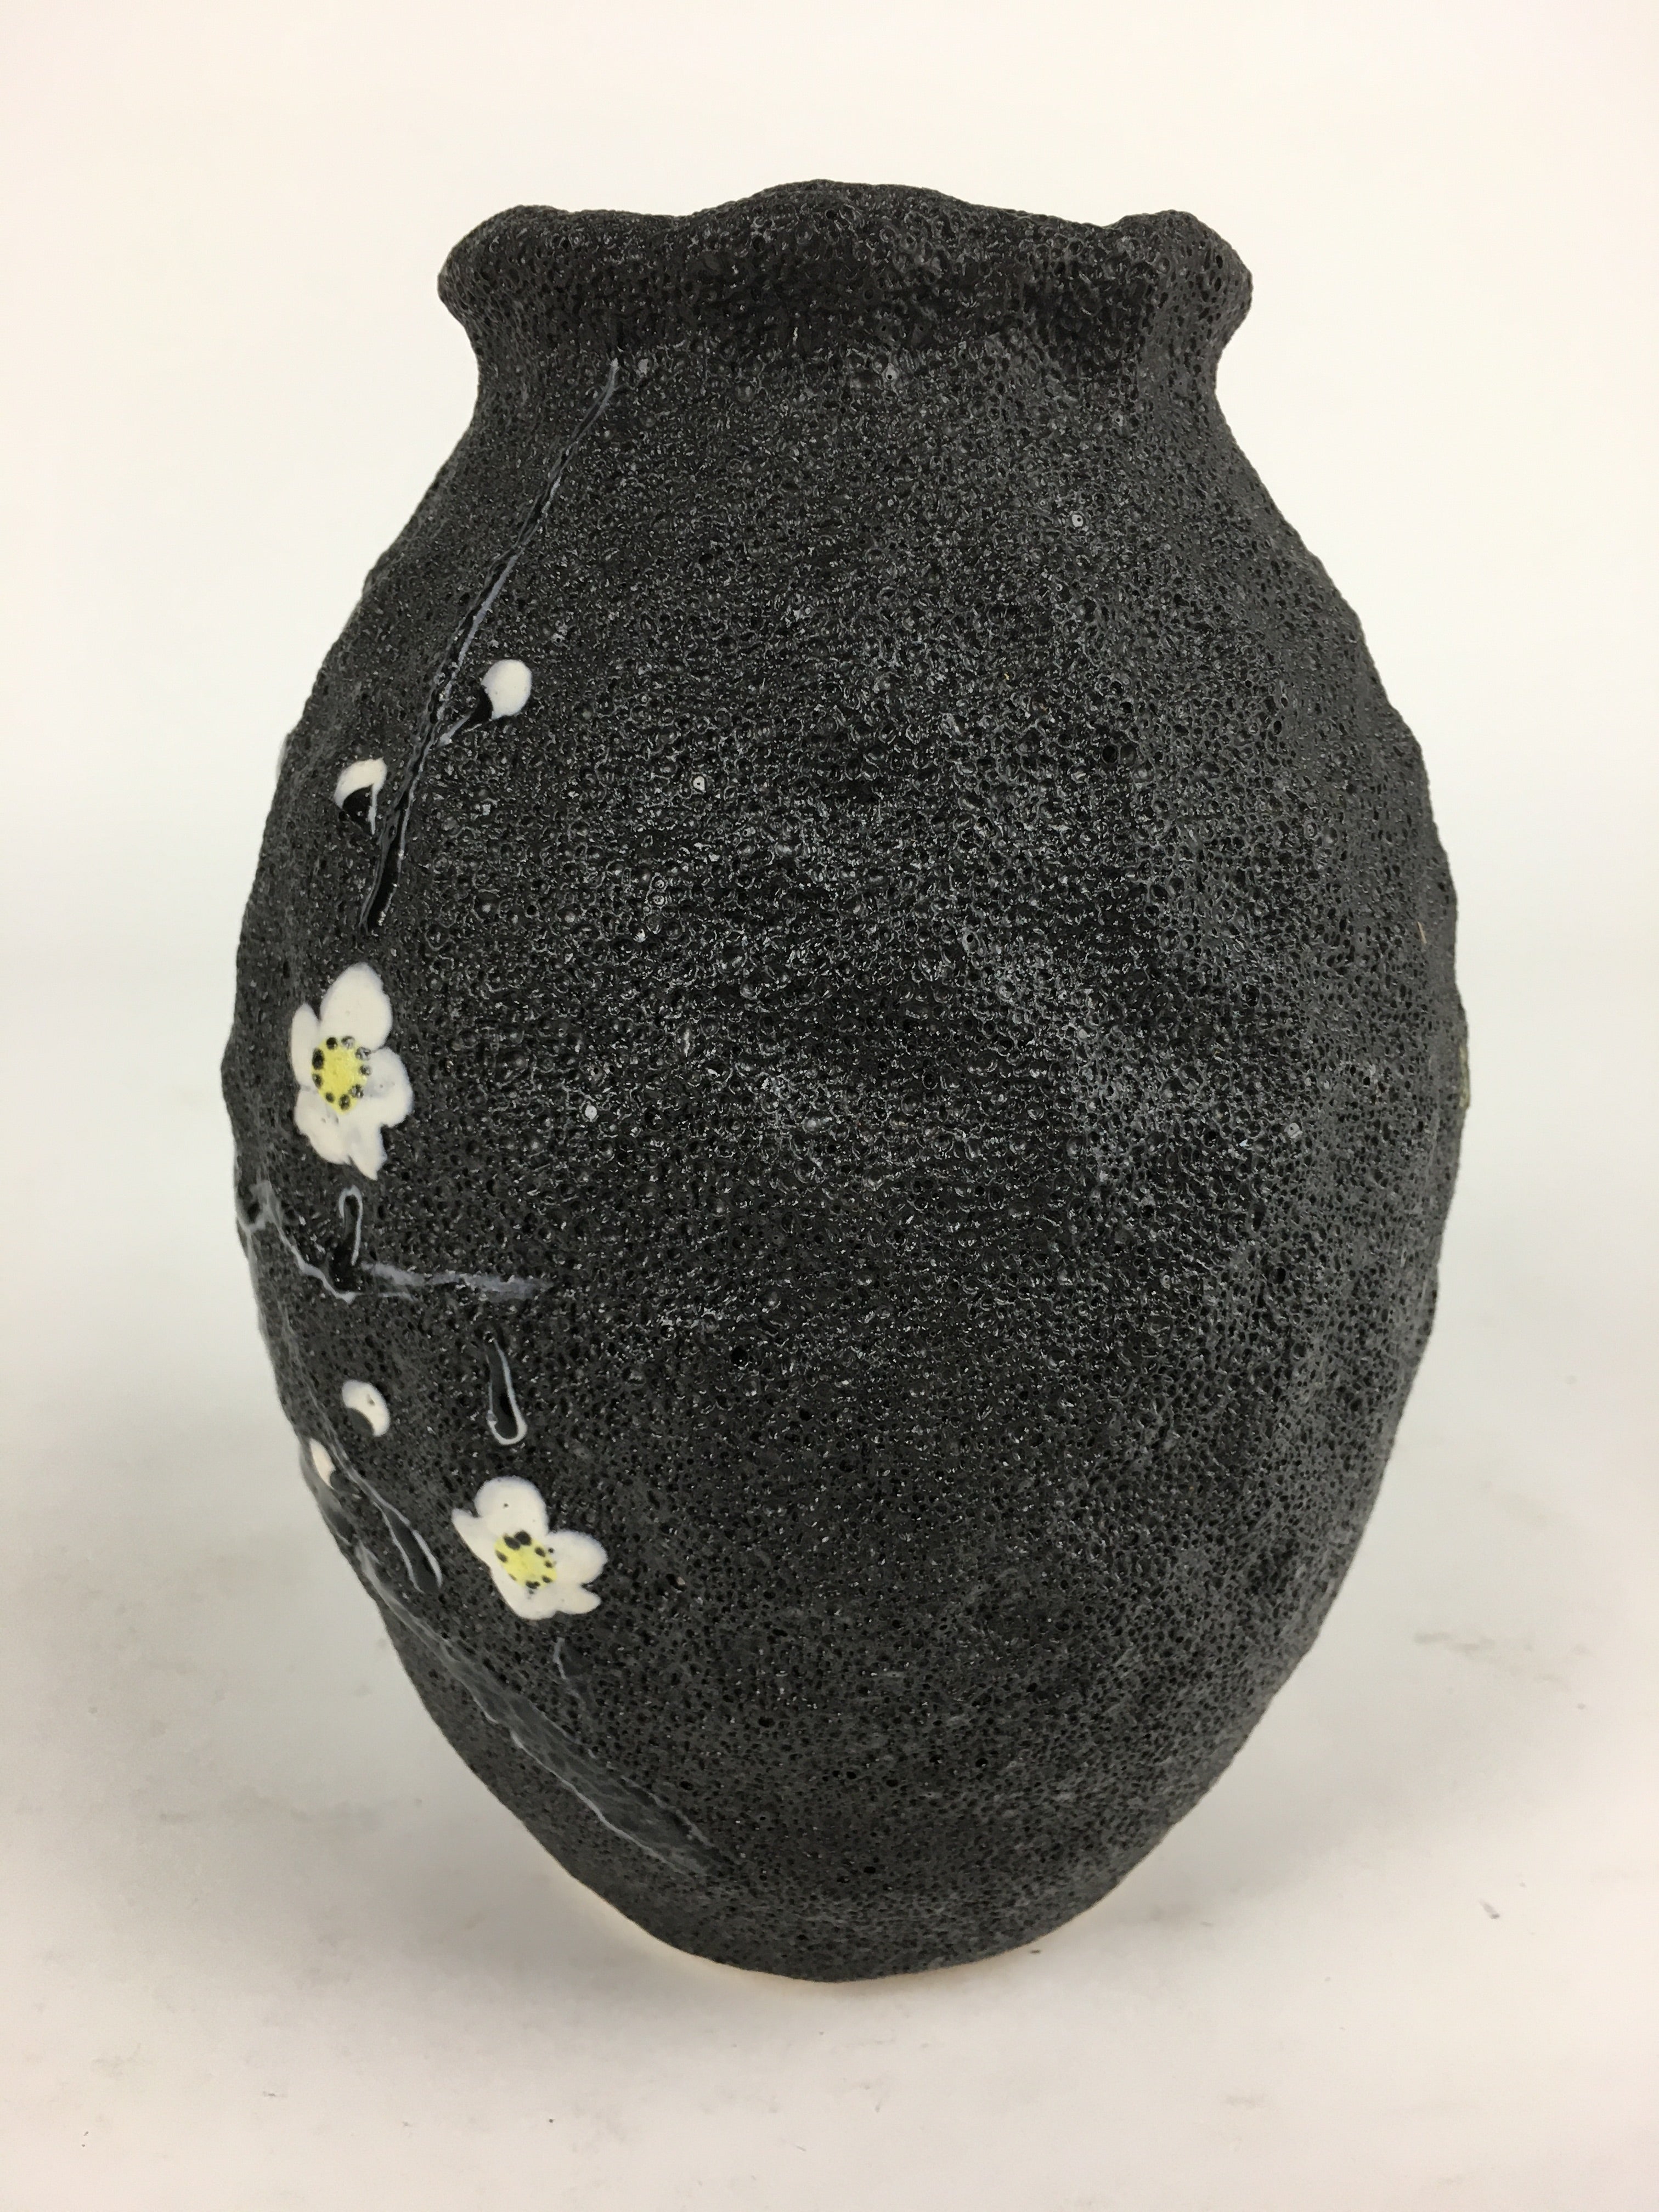 Japanese Ceramic Flower Vase Vtg Plum blossom Kabin Ikebana Arrangement FV954